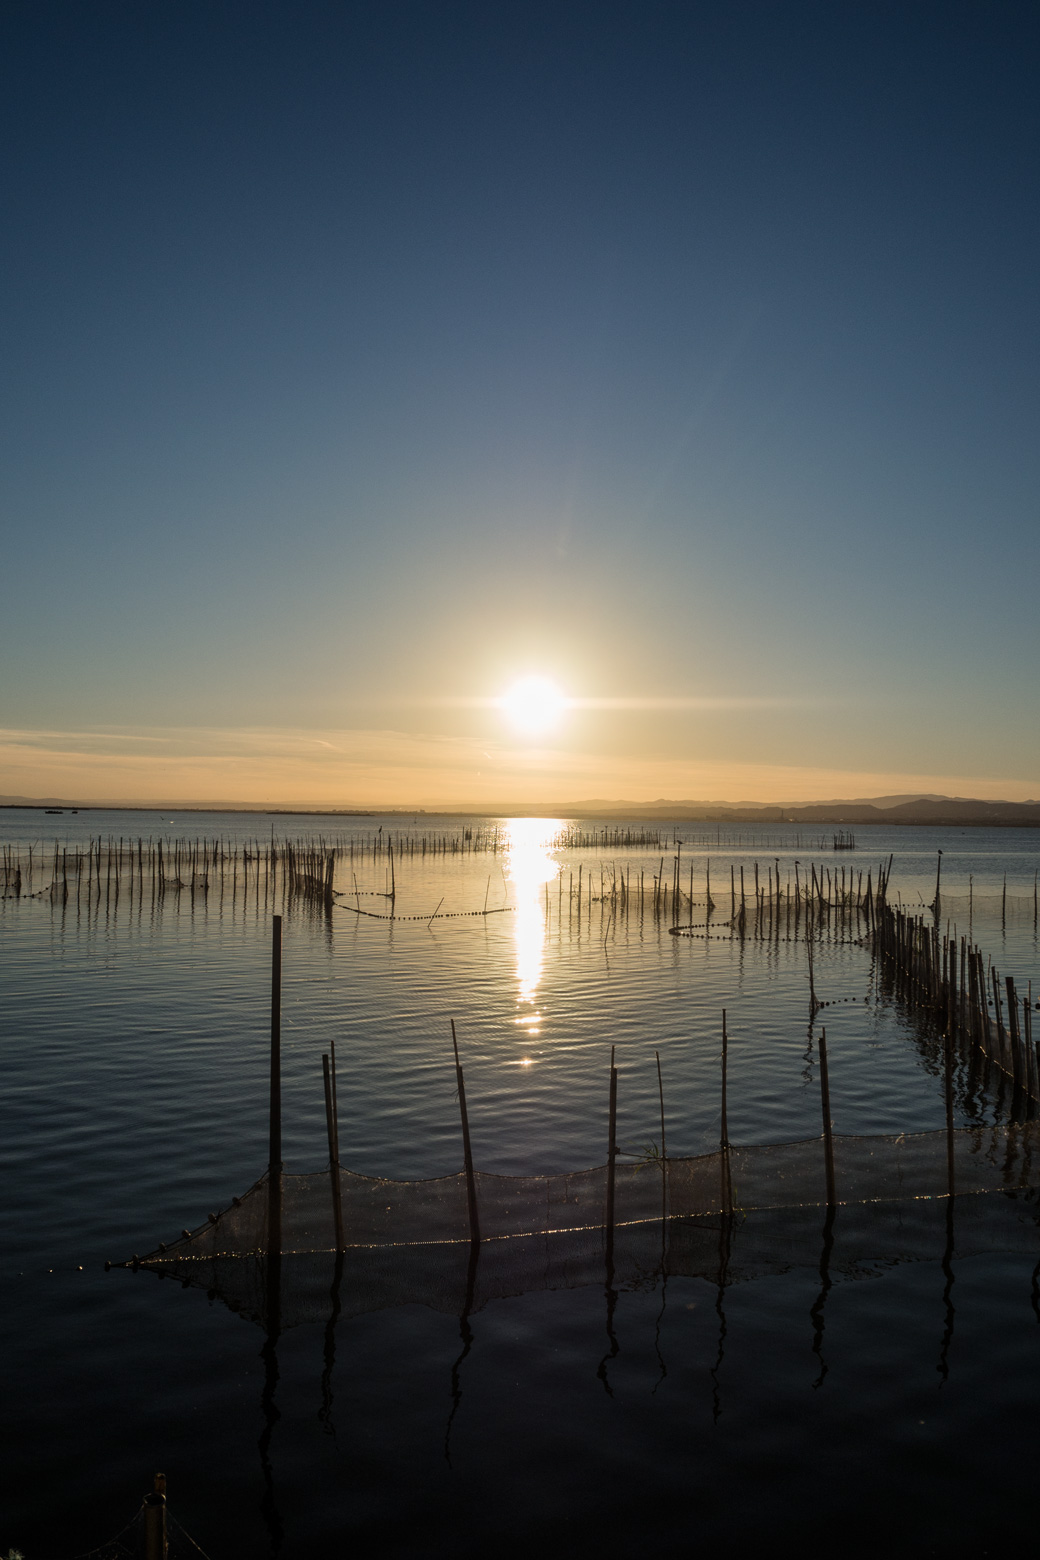 La Albufera – das ist der größte See Spaniens und eines der bedeutendsten Feuchtbiotope der iberischen Halbinsel. Das Naturschutzgebiet wird von einzigartigen Wasservögeln als Überwinterung genutzt. Die reichhaltigen Gewässer haben seit jeher den Fischern und Reisbauern als Lebensunterhalt gedient. Hier wird auch der Reis für die Paella angebaut.